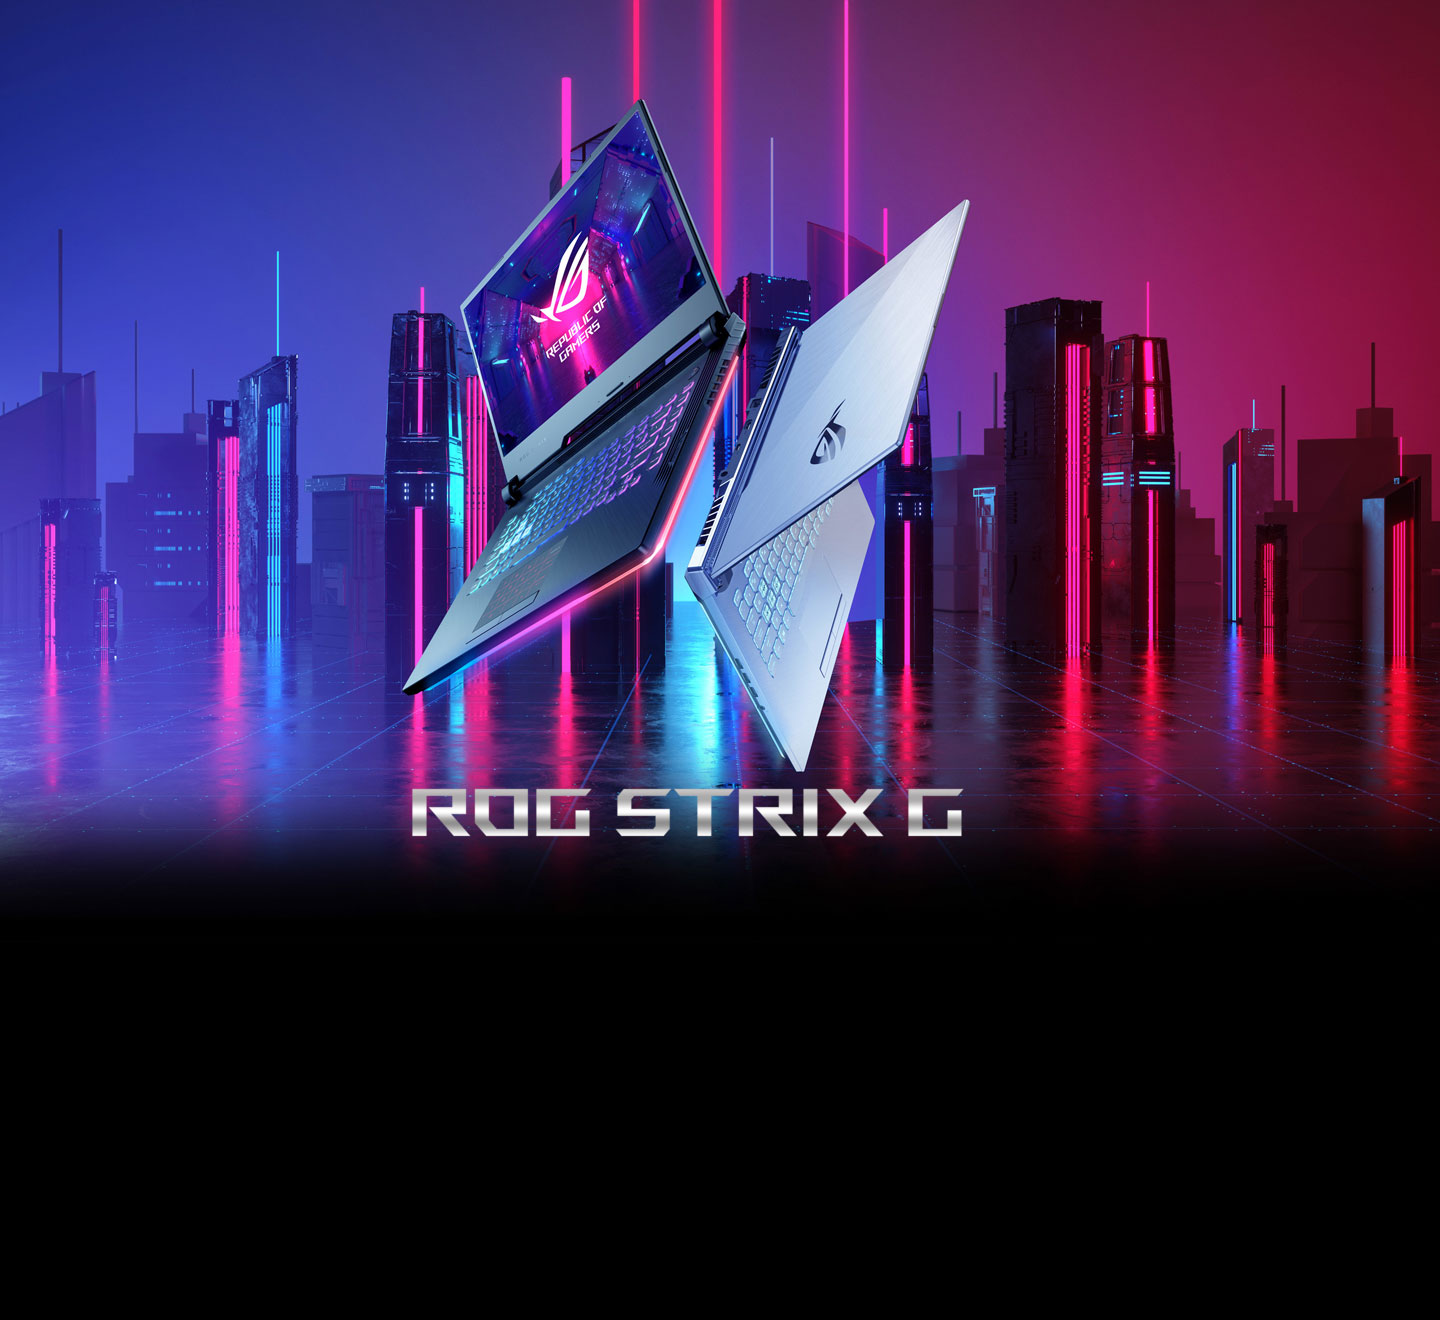 ASUS ROG STRIX: Đặt chân vào thế giới của game thủ chuyên nghiệp với ASUS ROG STRIX - dòng sản phẩm laptop gaming hàng đầu. Với hiệu suất vượt trội và thiết kế đậm chất lối chơi, bạn sẽ có những trải nghiệm gaming hoàn toàn mới mẻ. Tham gia trận đấu chiến với các người chơi khác và khẳng định tài năng của mình với ASUS ROG STRIX.